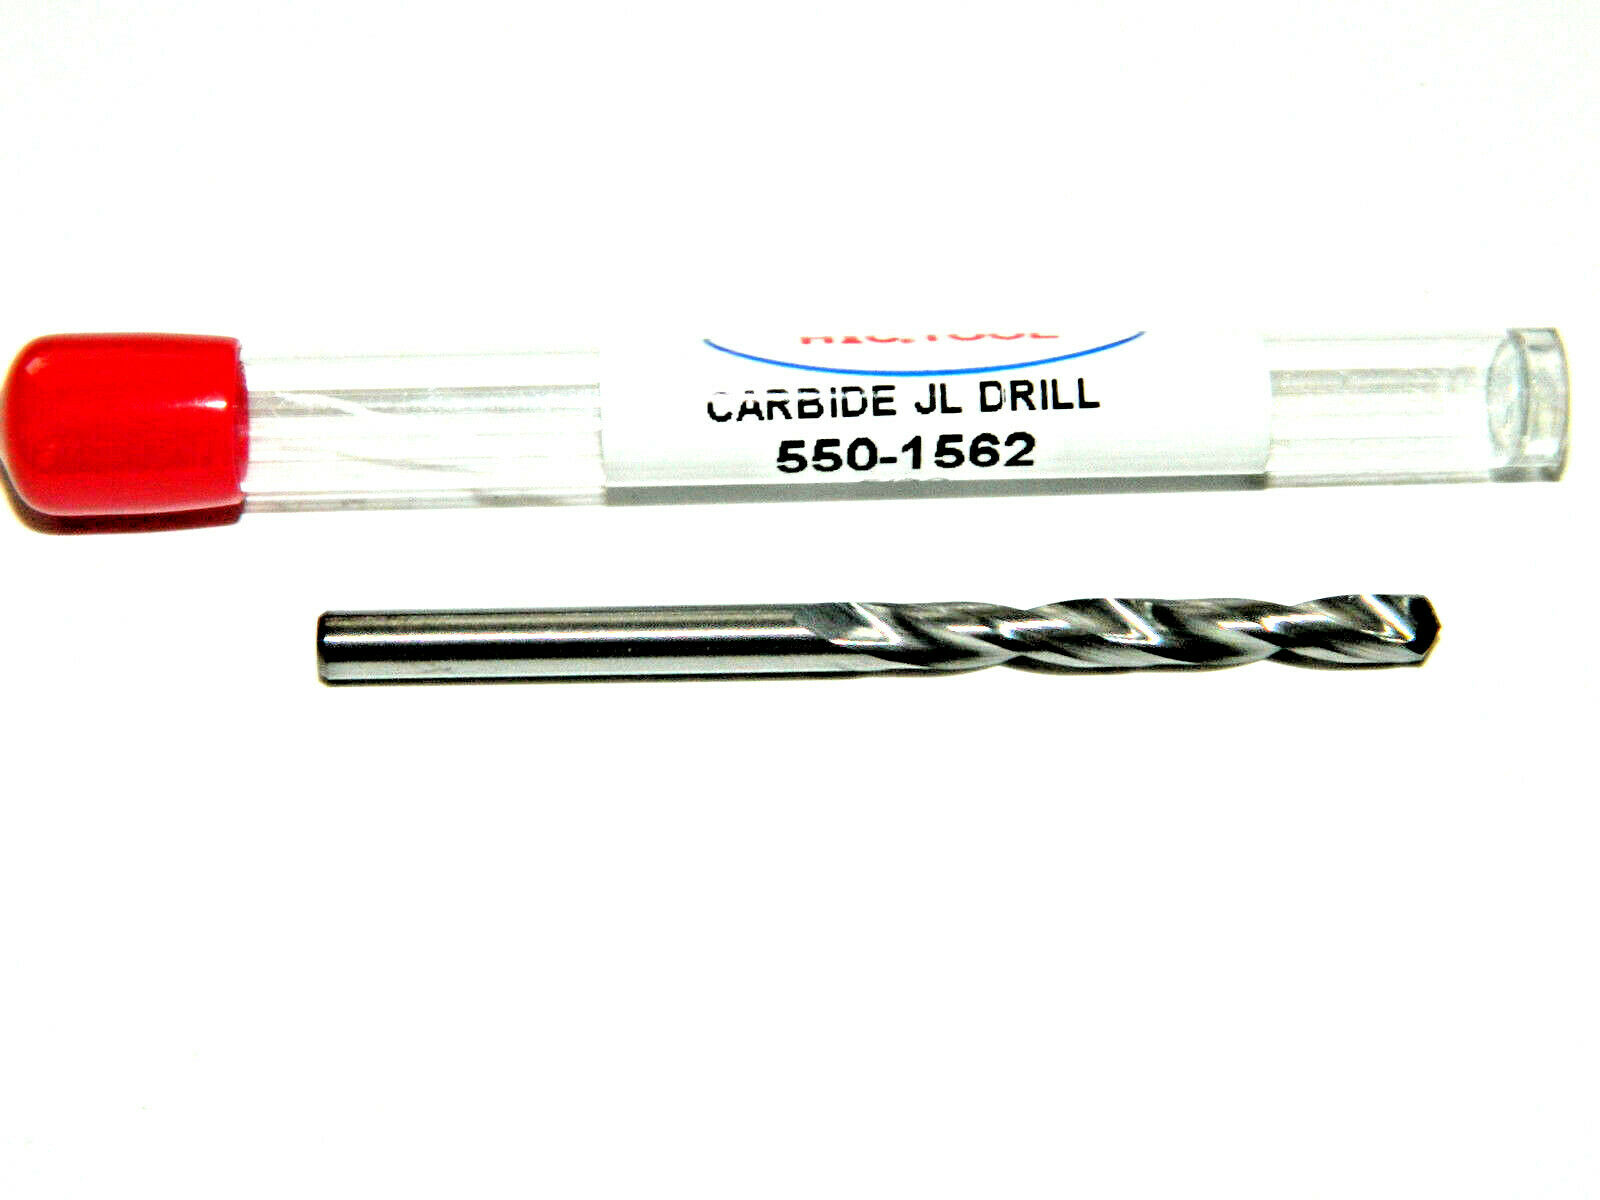 5/32" Dia. Solid Carbide Twist Drill Bit Jobber 2 Flute Usa, Htc 550-1562, D4